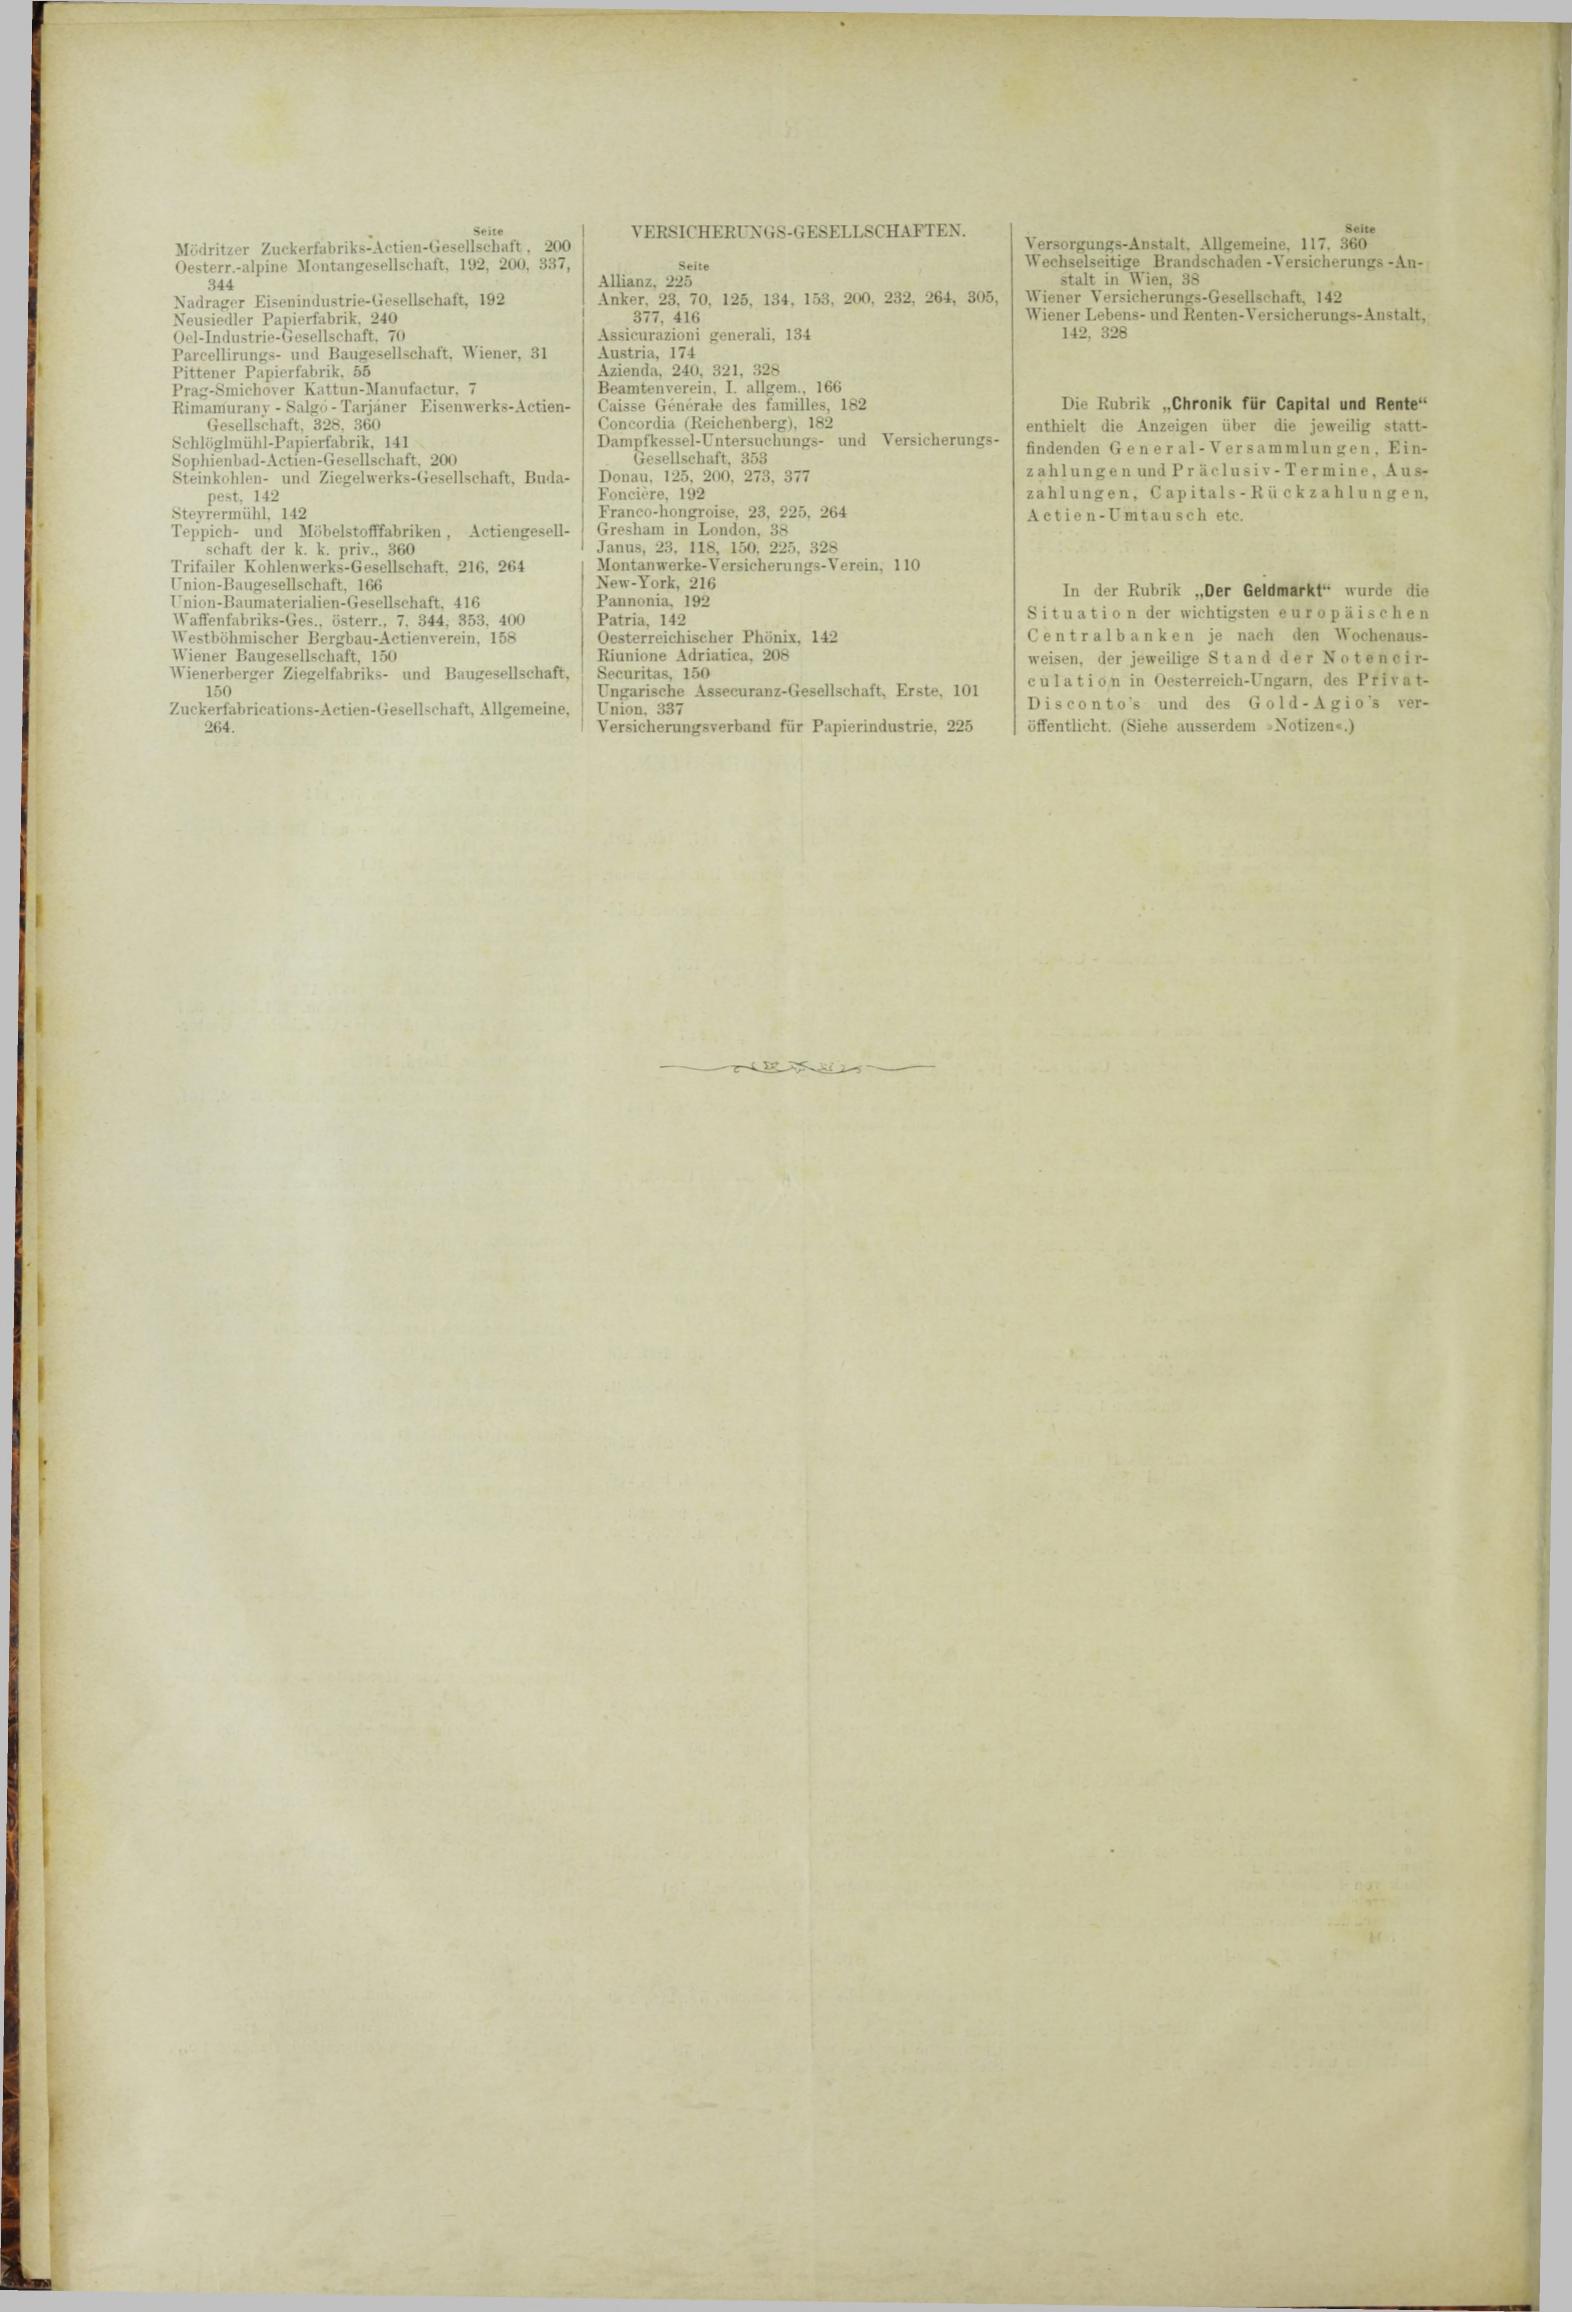 Der Tresor 07.06.1883 - Seite 14